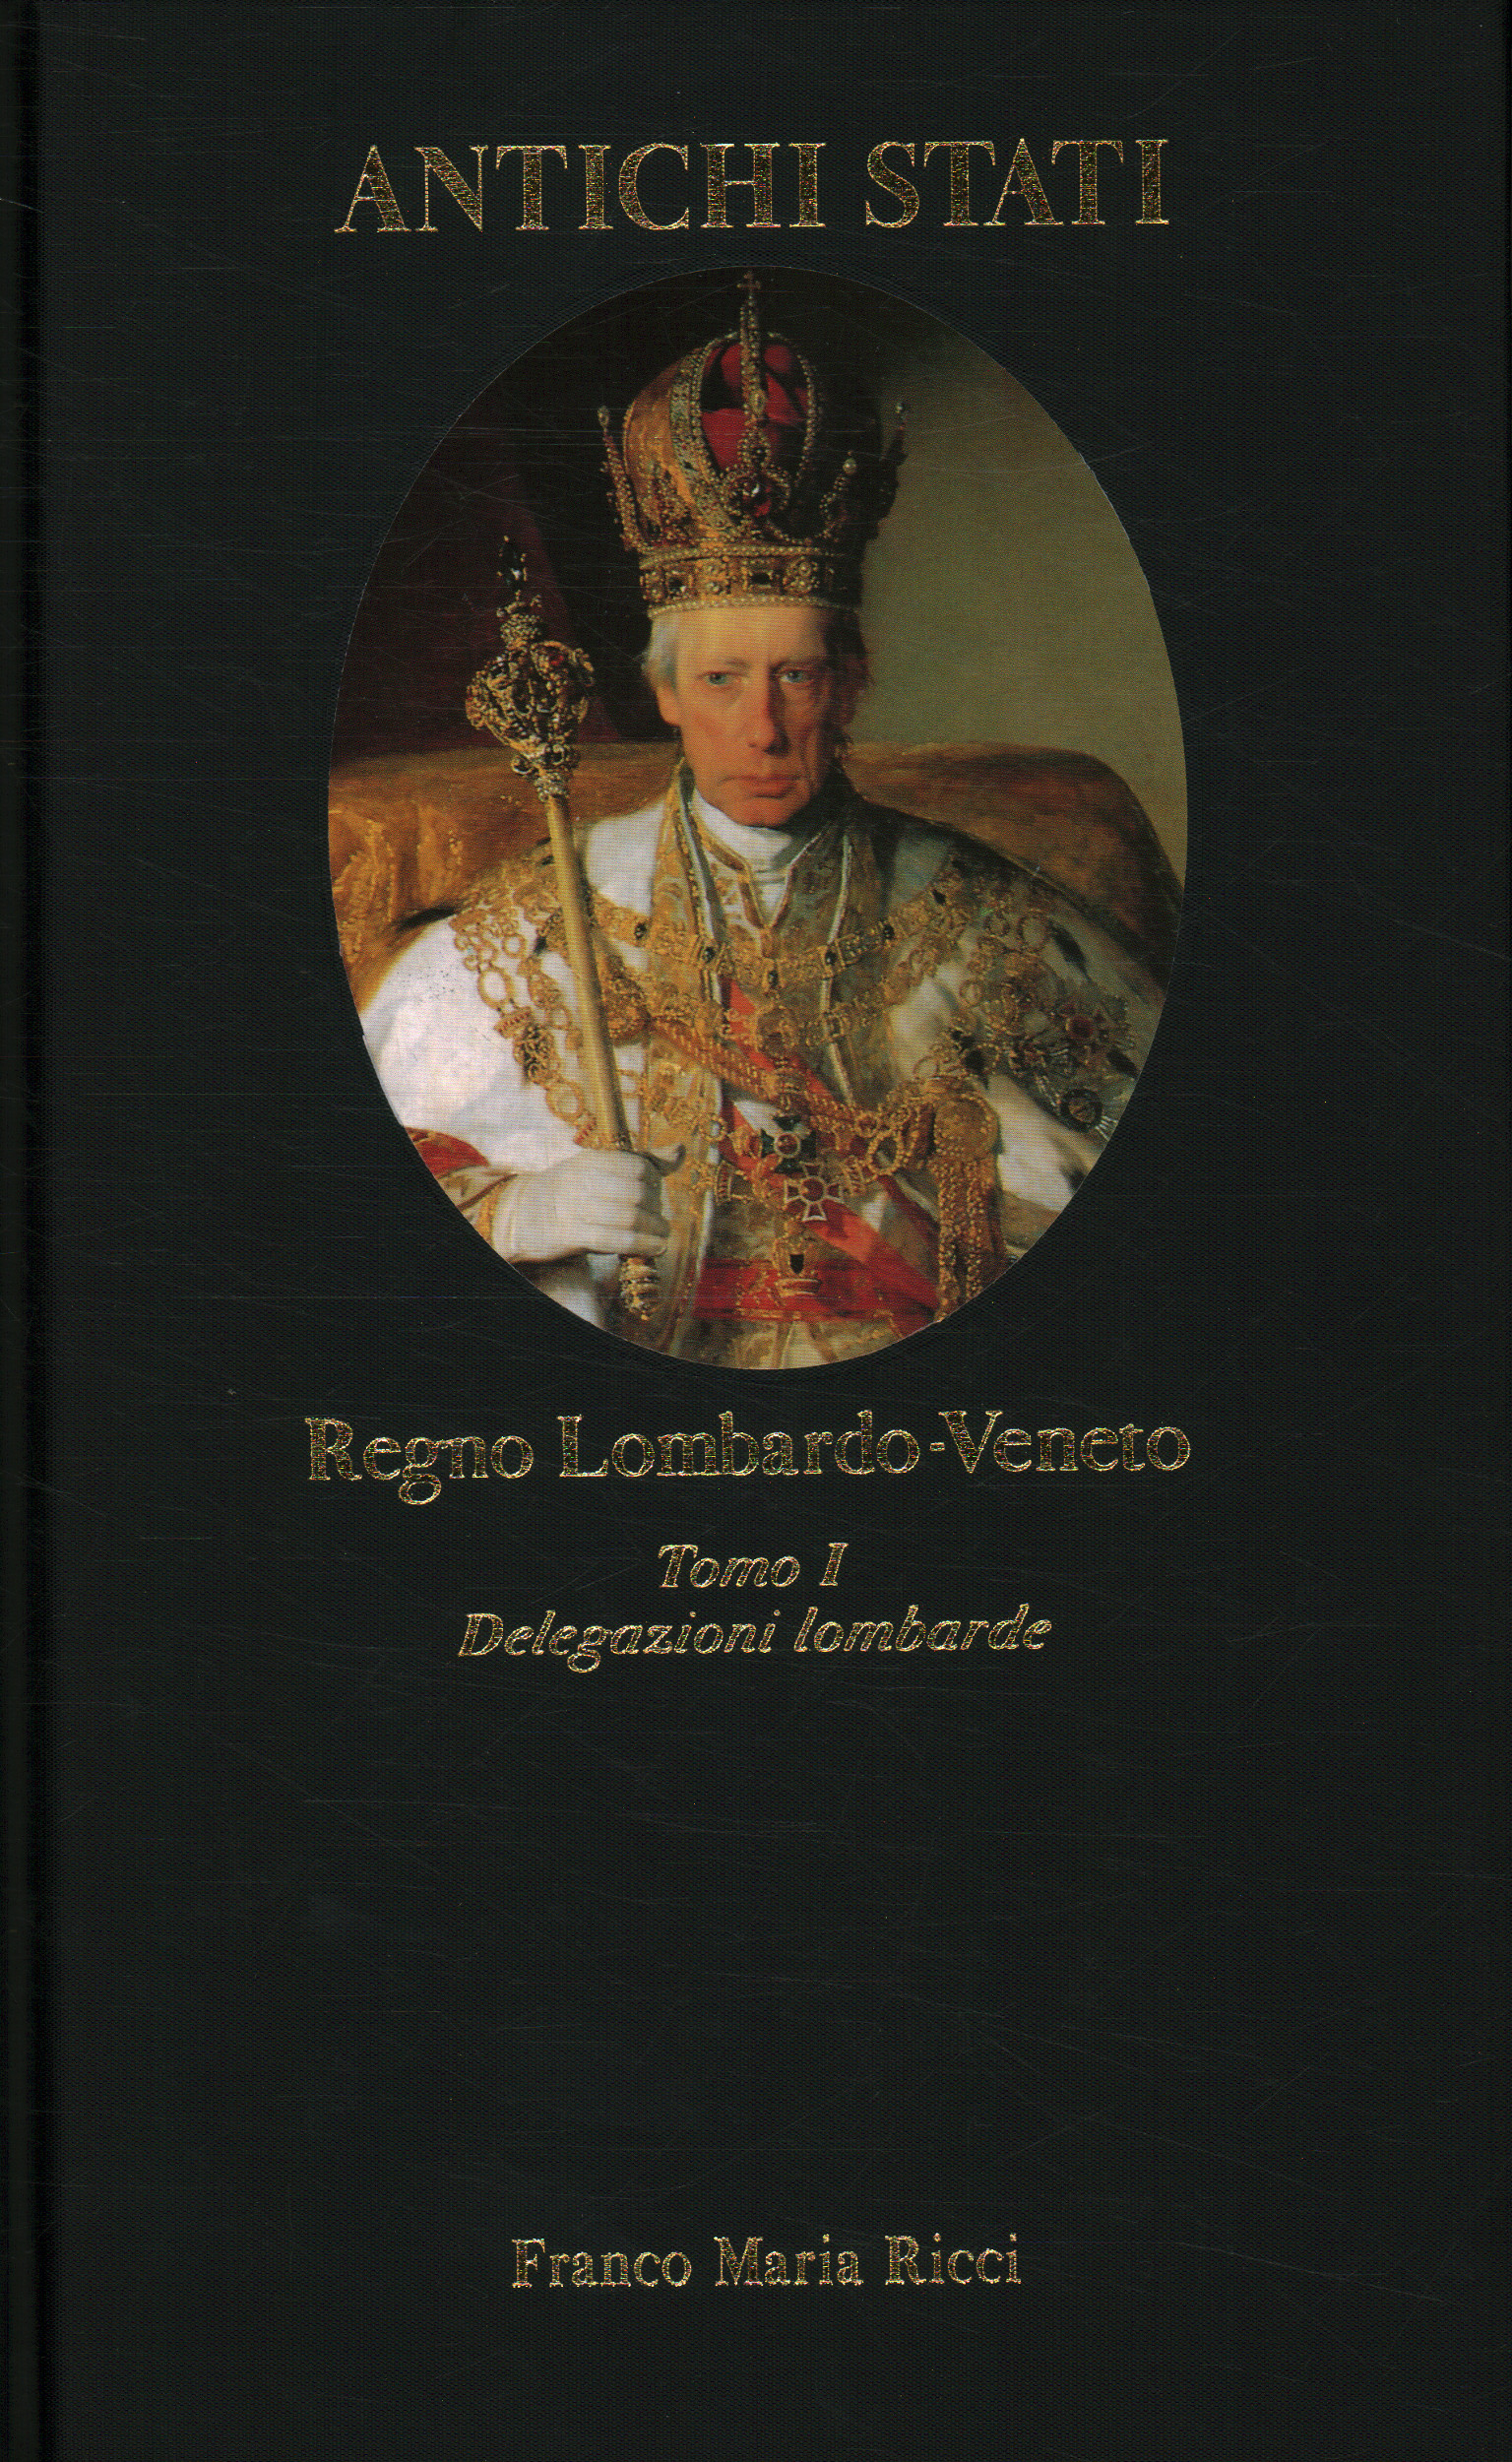 Reino de Lombardía-Véneto. Delegaciones lombardas%, Reino de Lombardía-Véneto. Delegaciones lombardas%